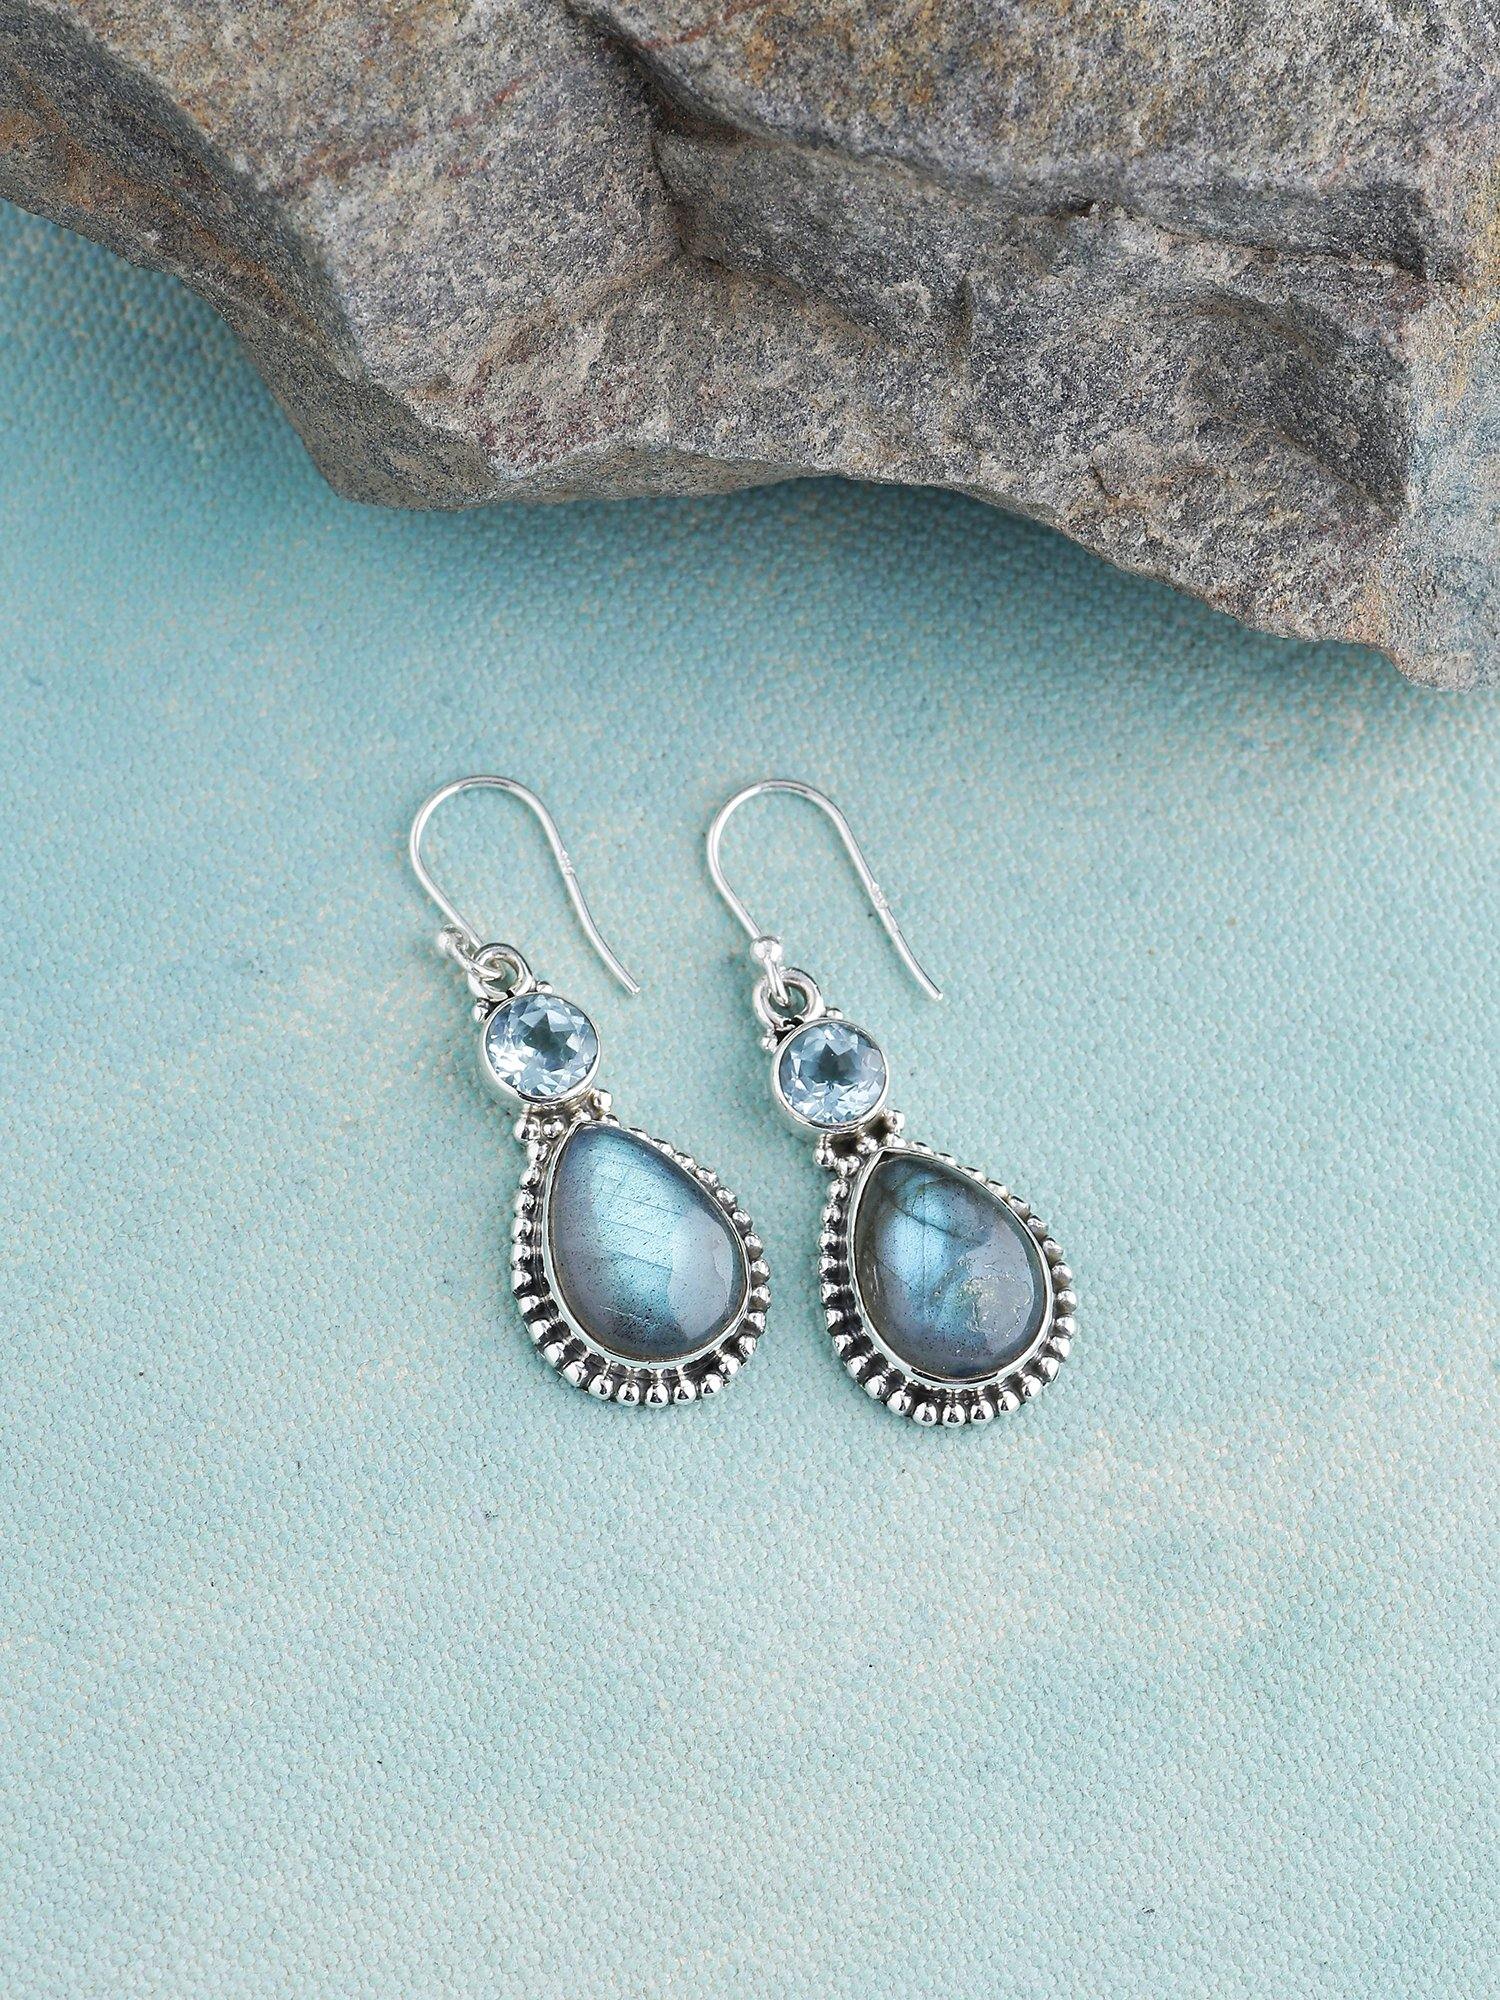 Labradorite Blue Topaz Solid 925 Sterling Silver Teardrop Earrings Jewelry - YoTreasure